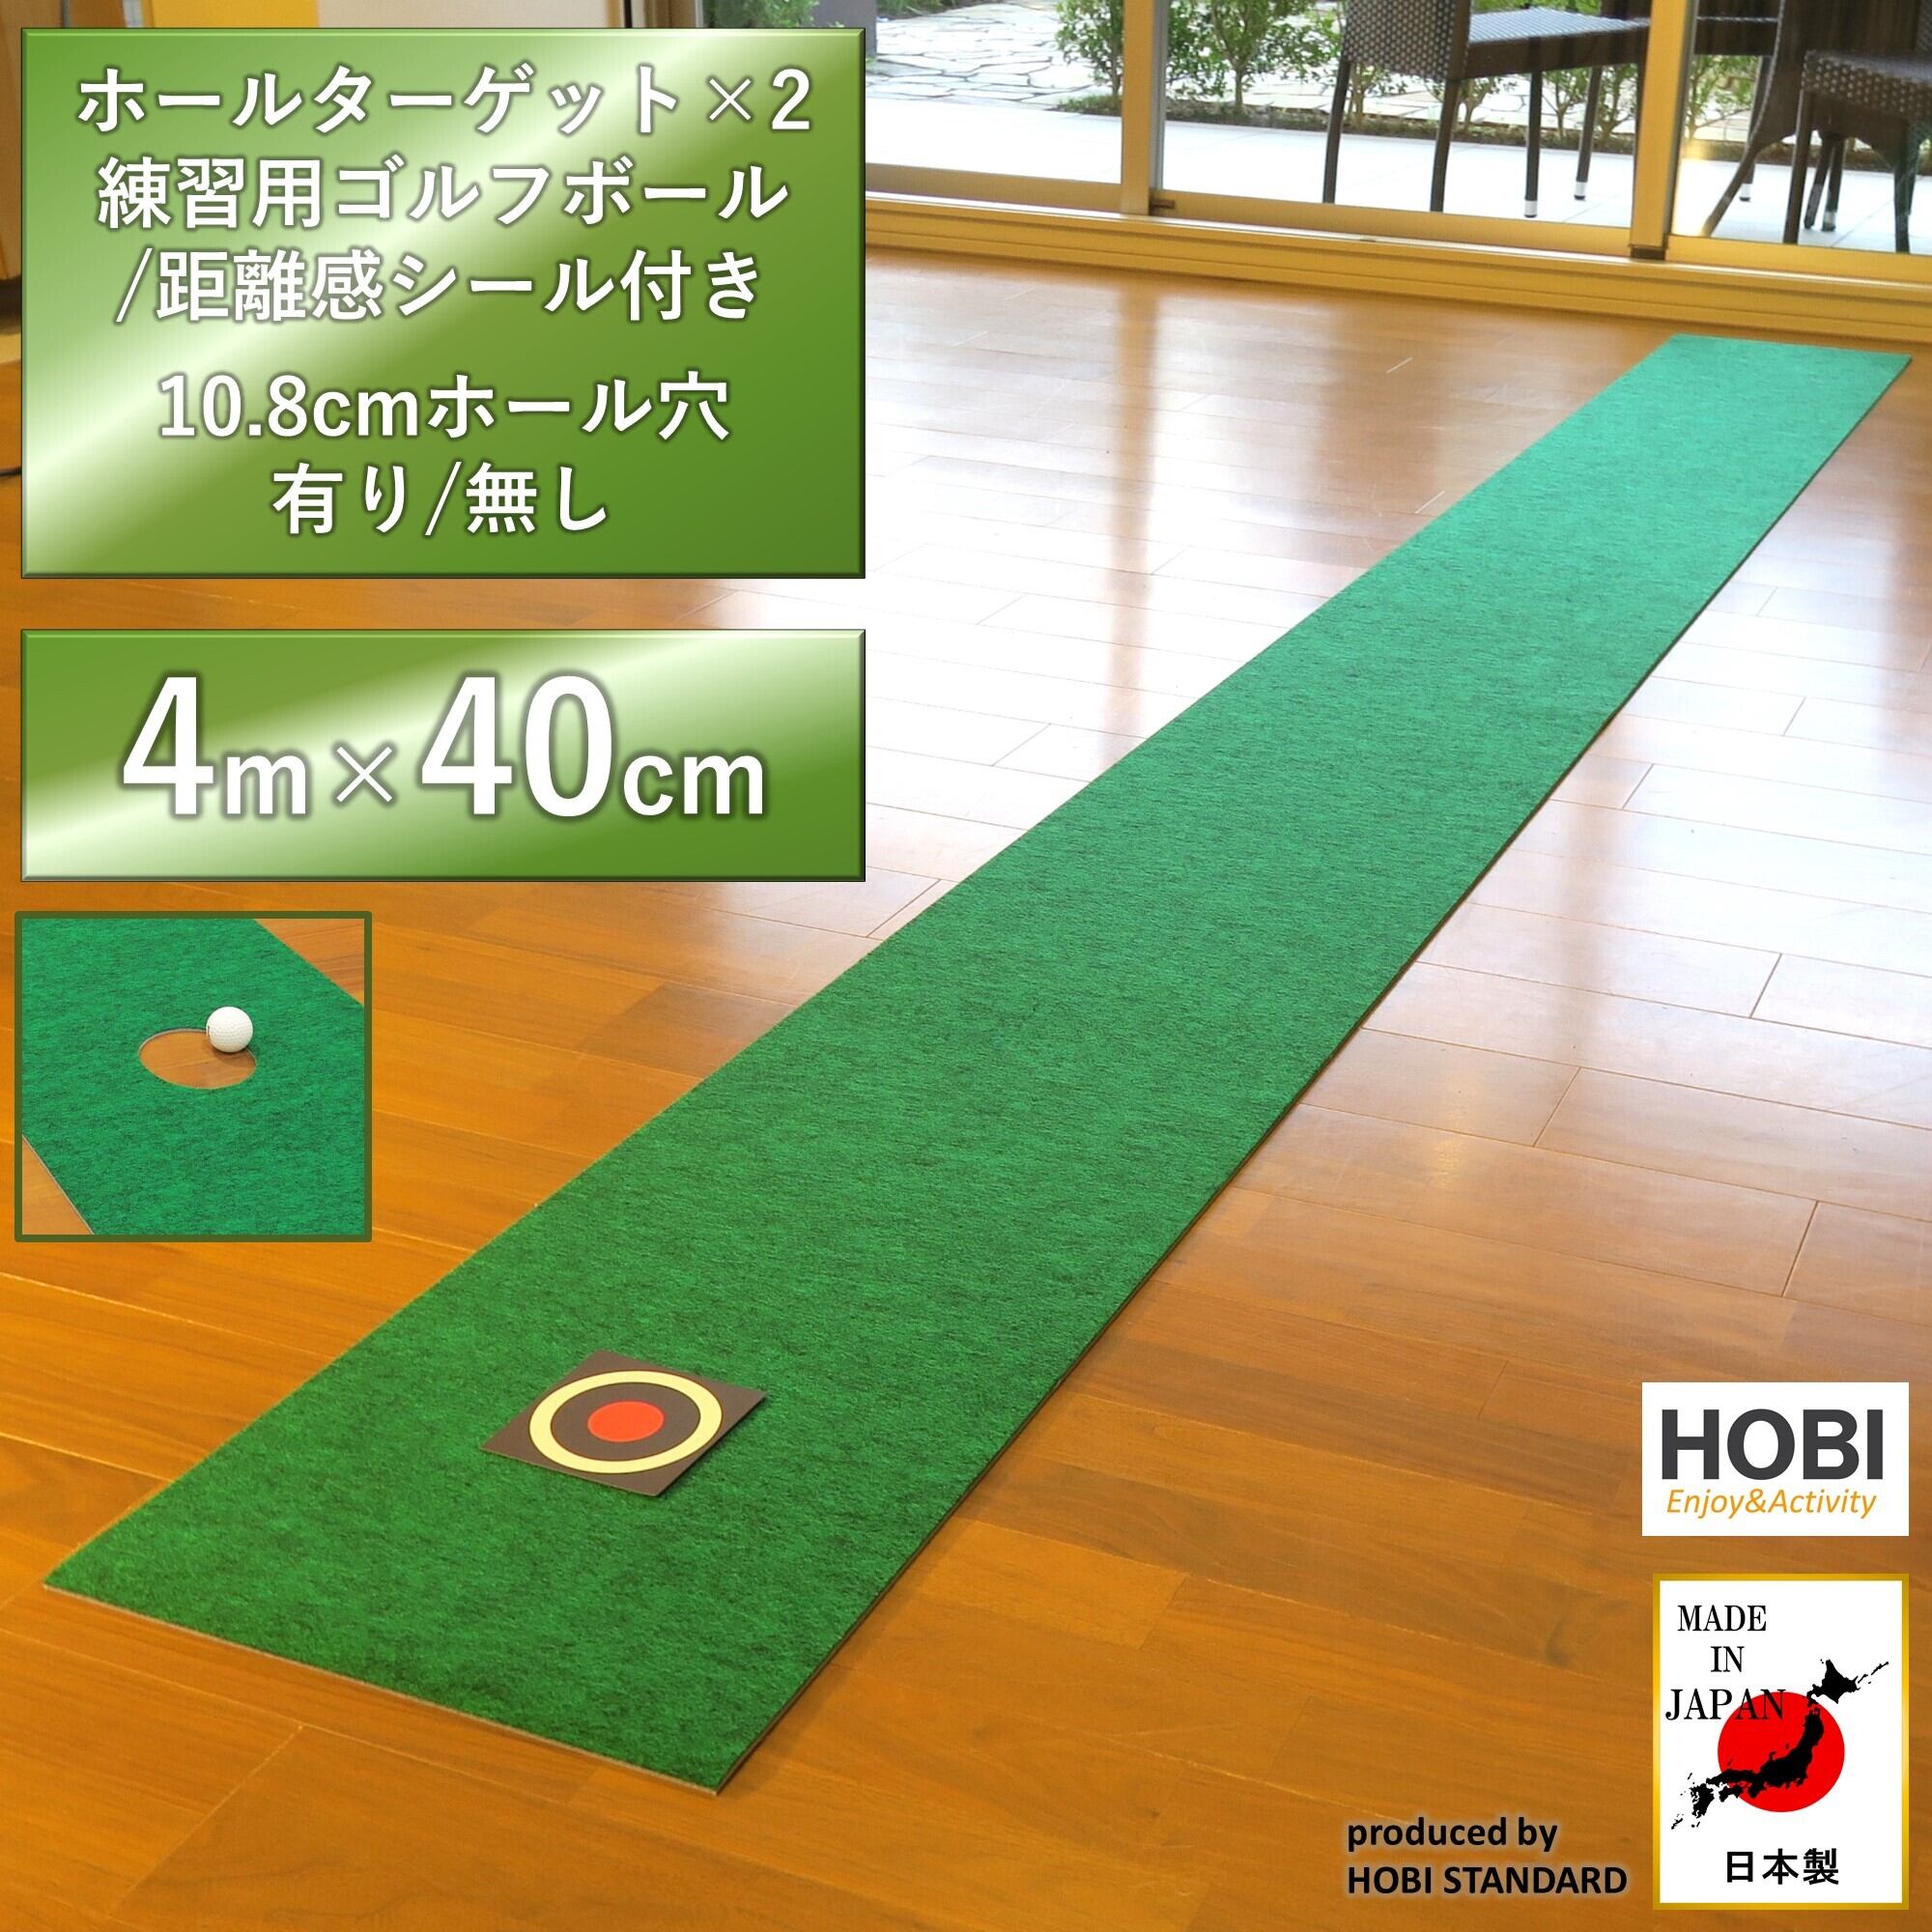 ゴルフパターマット 4m×40cm [HOBI]【日本製】[本格芝生] (ホールターゲット×2/練習ボール/距離感シール付き) 裏面滑り止め加工  ゴルフ 練習用 パッティング ホビ [10.8cmホール穴付き/無し] [MADE IN JAPAN] | HOBI 